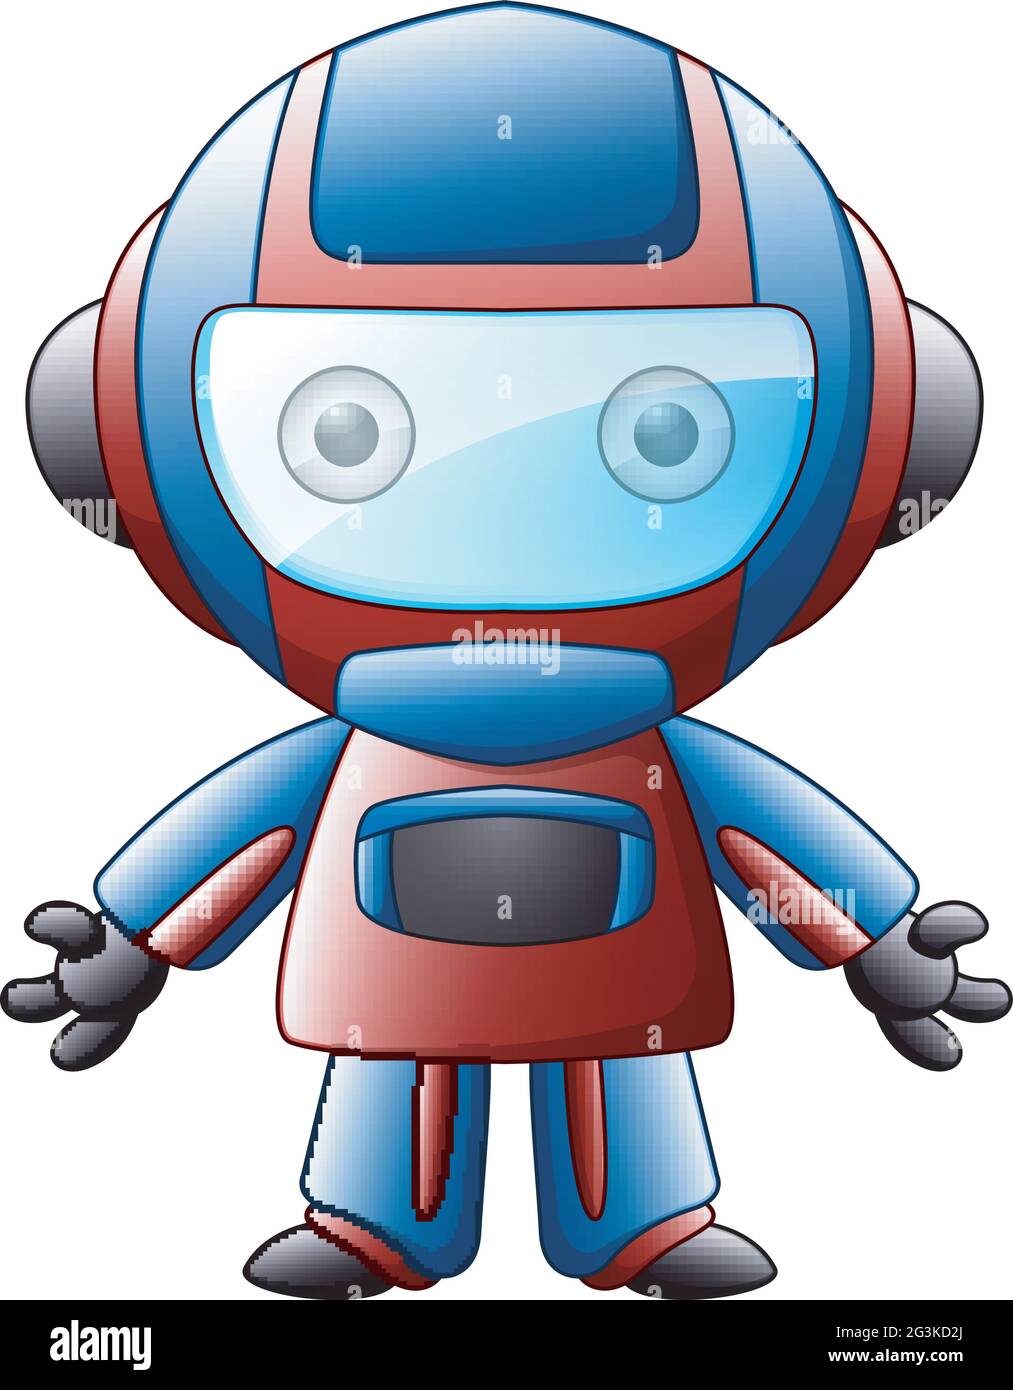 Dessin animé jouet robot sur fond blanc Image Vectorielle Stock - Alamy